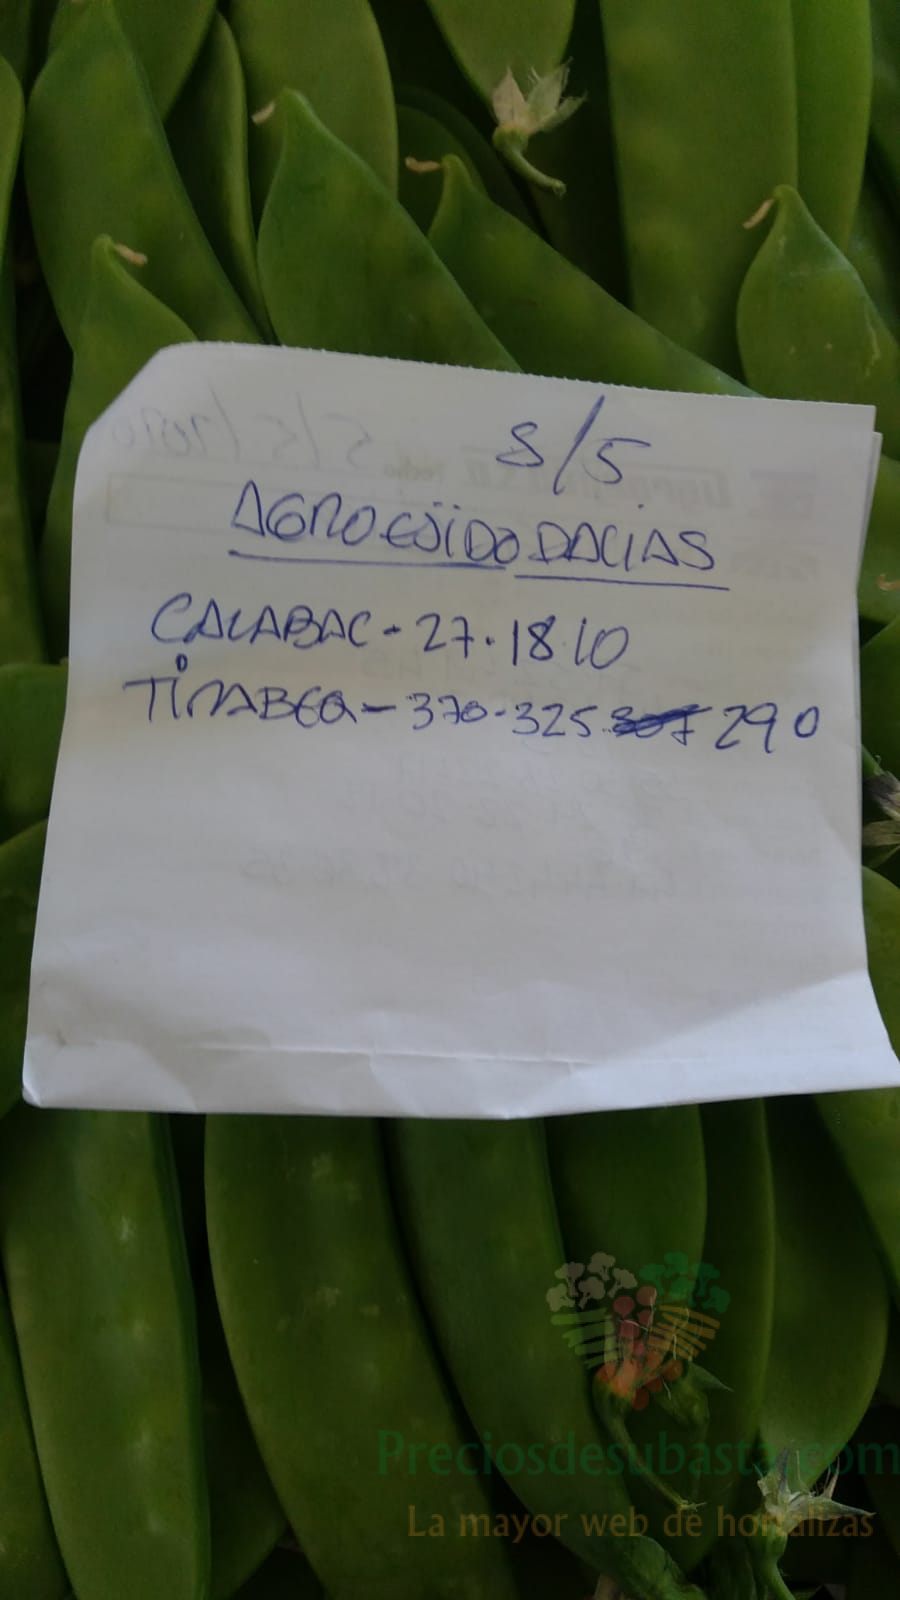 Subasta hortofrutícola AgroEjido Dalias 5 de mayo 2020